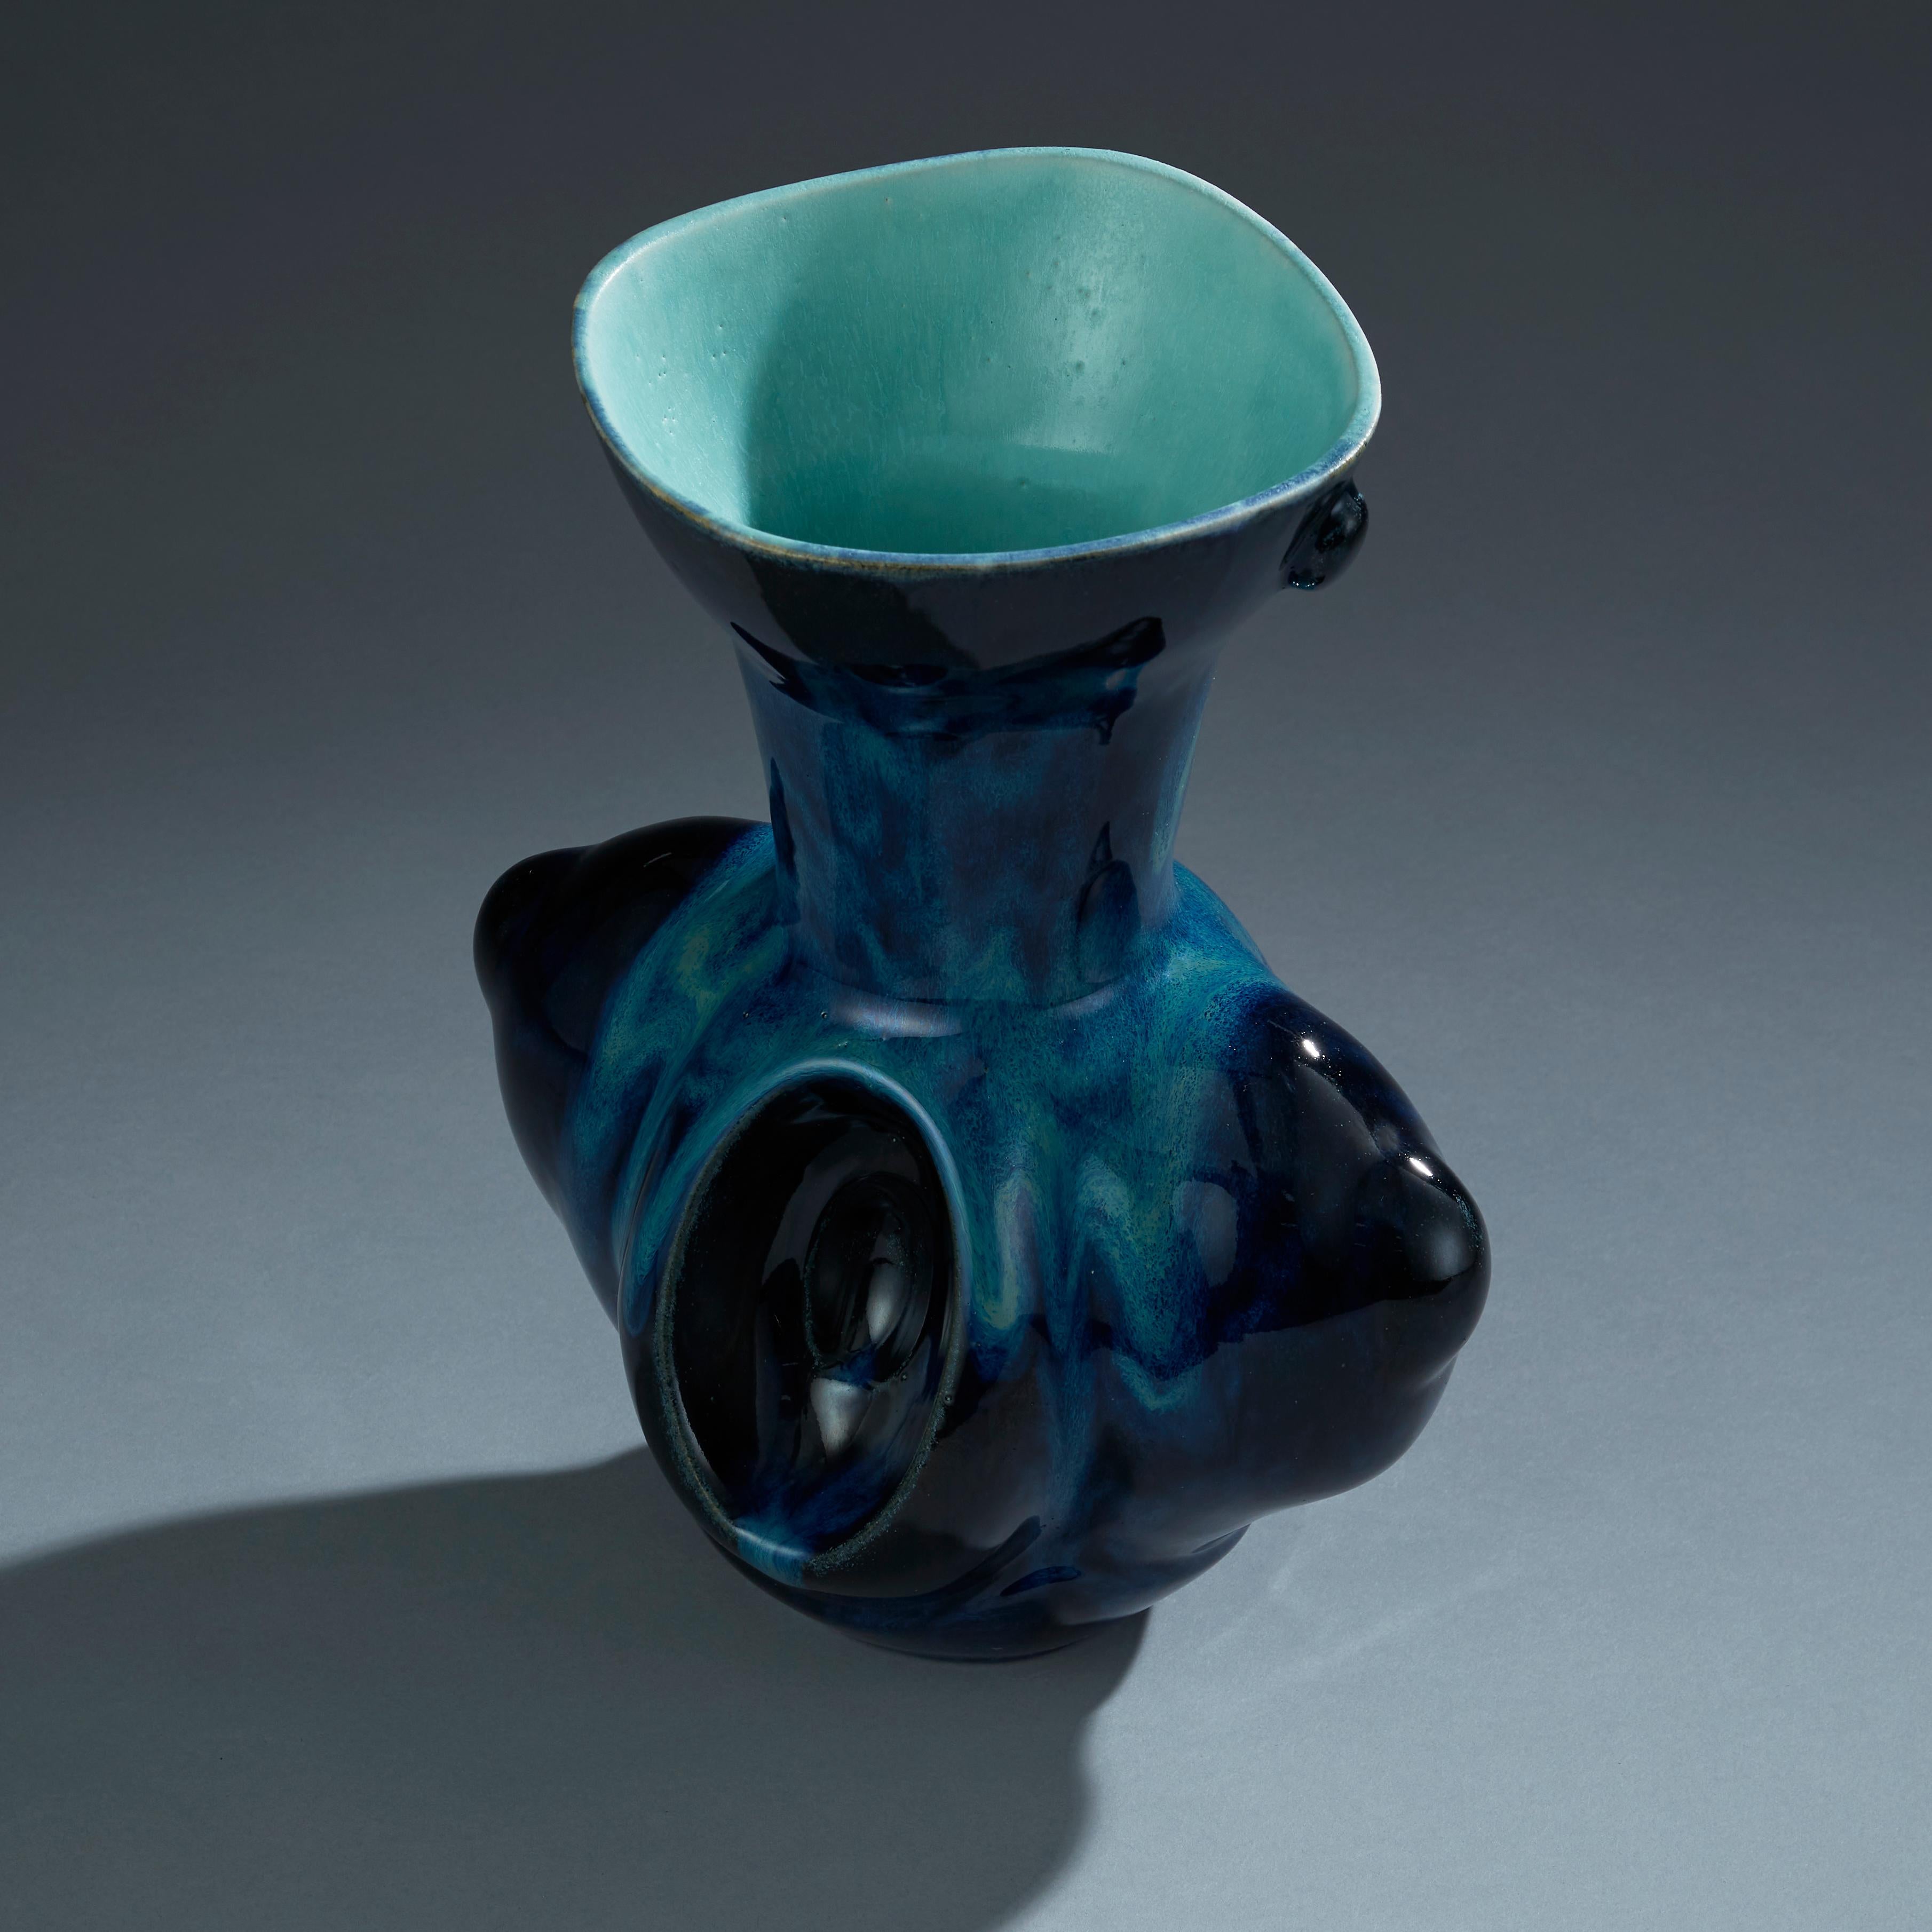 Baroque Deep Blue Ceramic Vase Contemporary 21st Century Italian Unique Piece For Sale